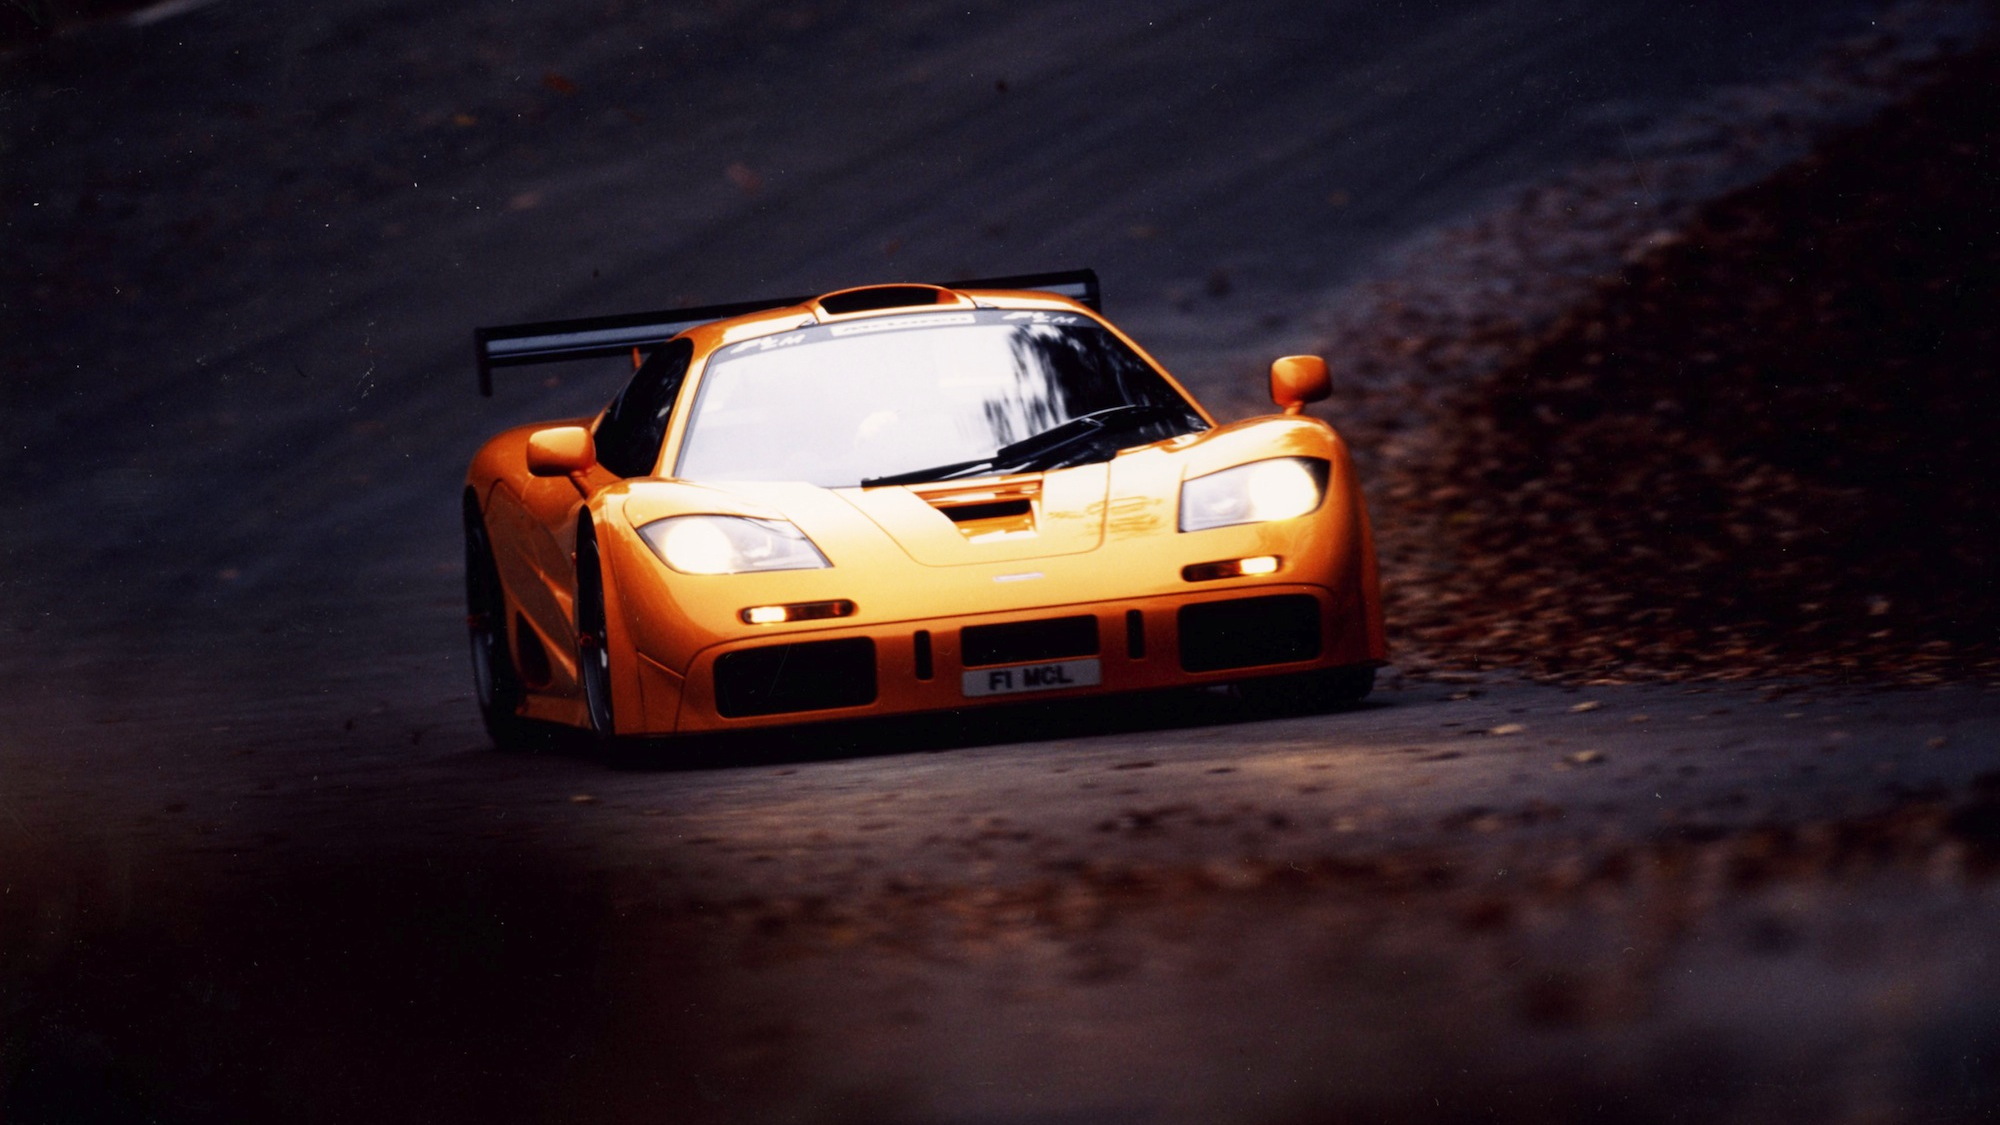 McLaren Le Mans hertiage race cars